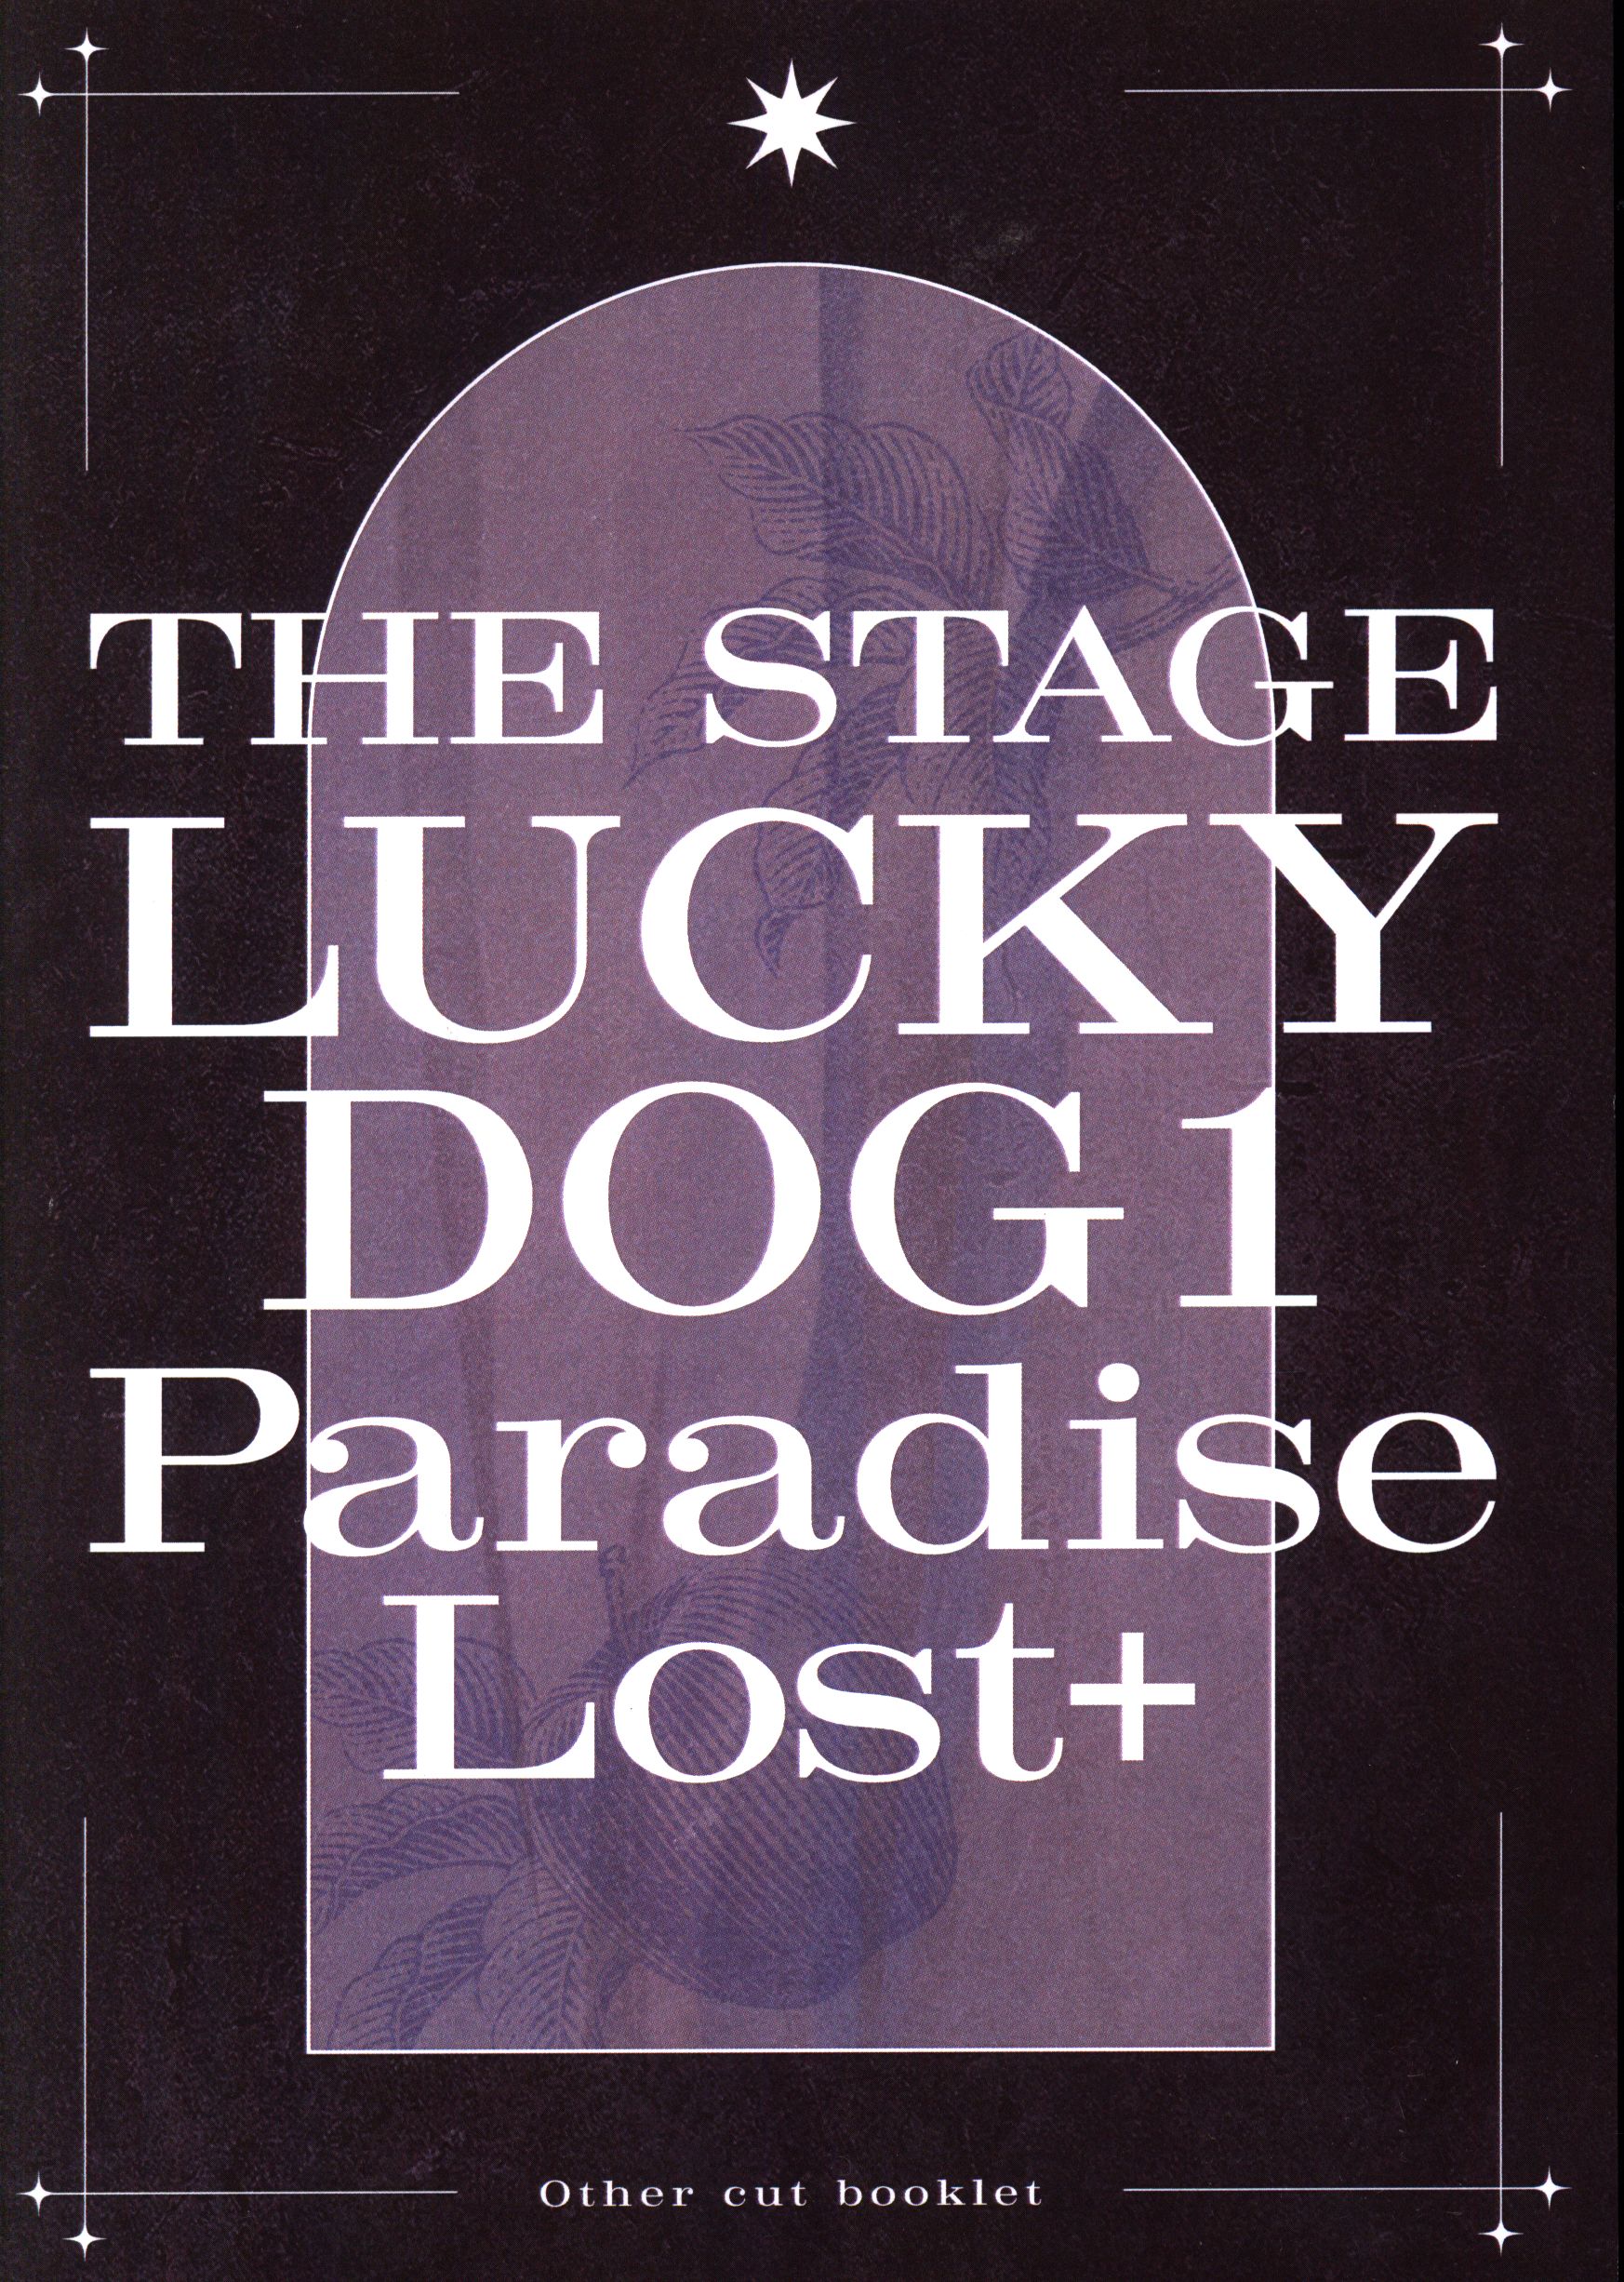 舞台DVD Paradise Lost+/THE STAGE ラッキードッグ1 ※未開封